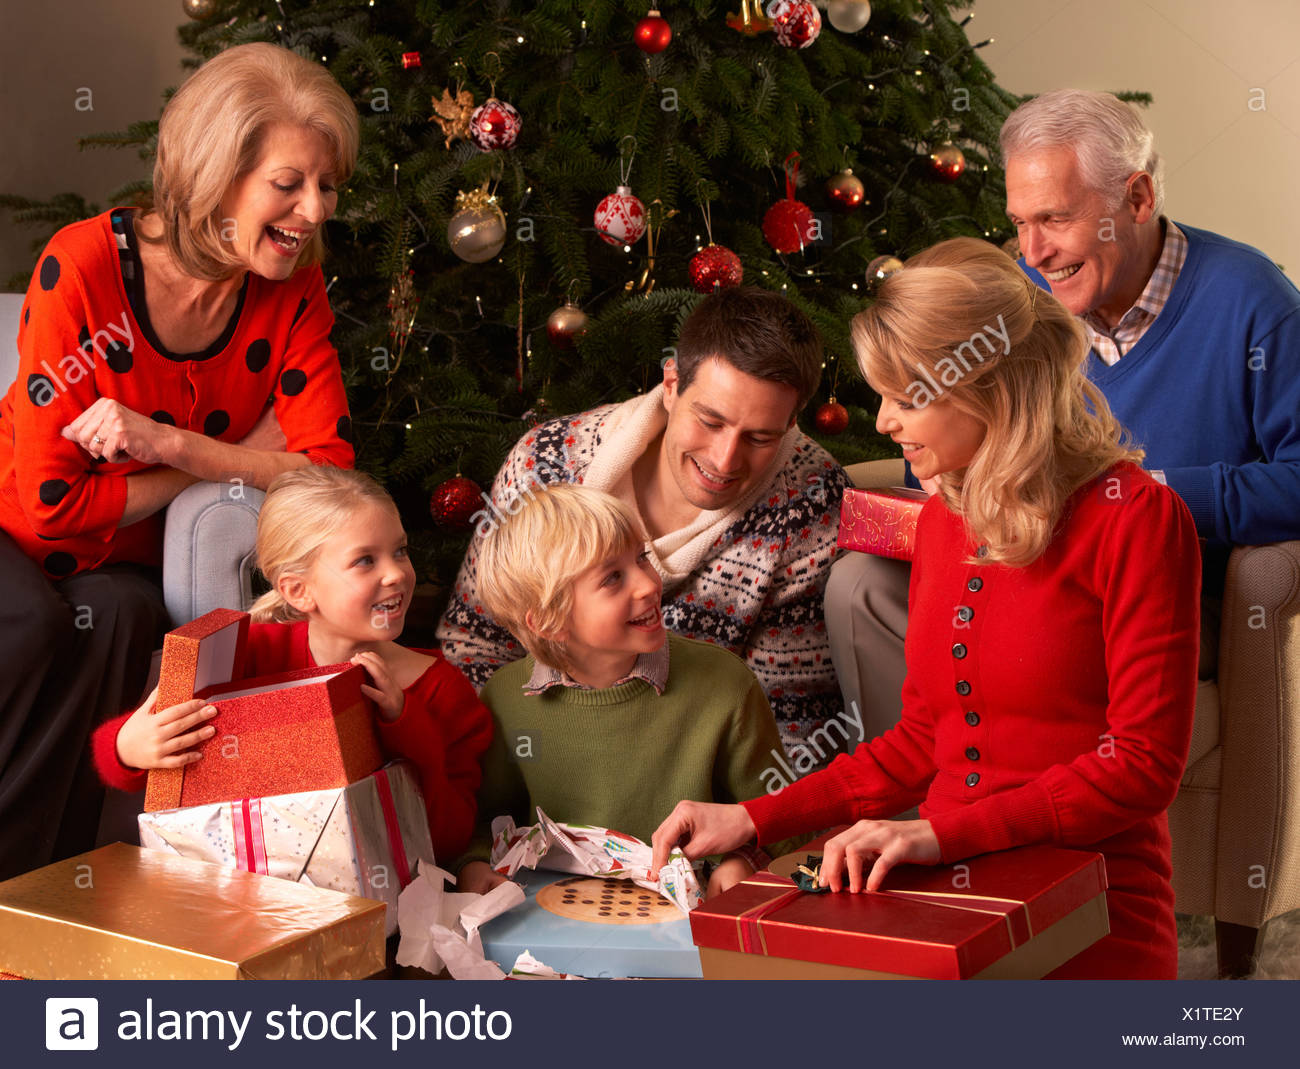 Regali Natale Famiglia.Tre Generazioni La Famiglia Di Aprire I Regali Di Natale A Casa Foto Stock Alamy